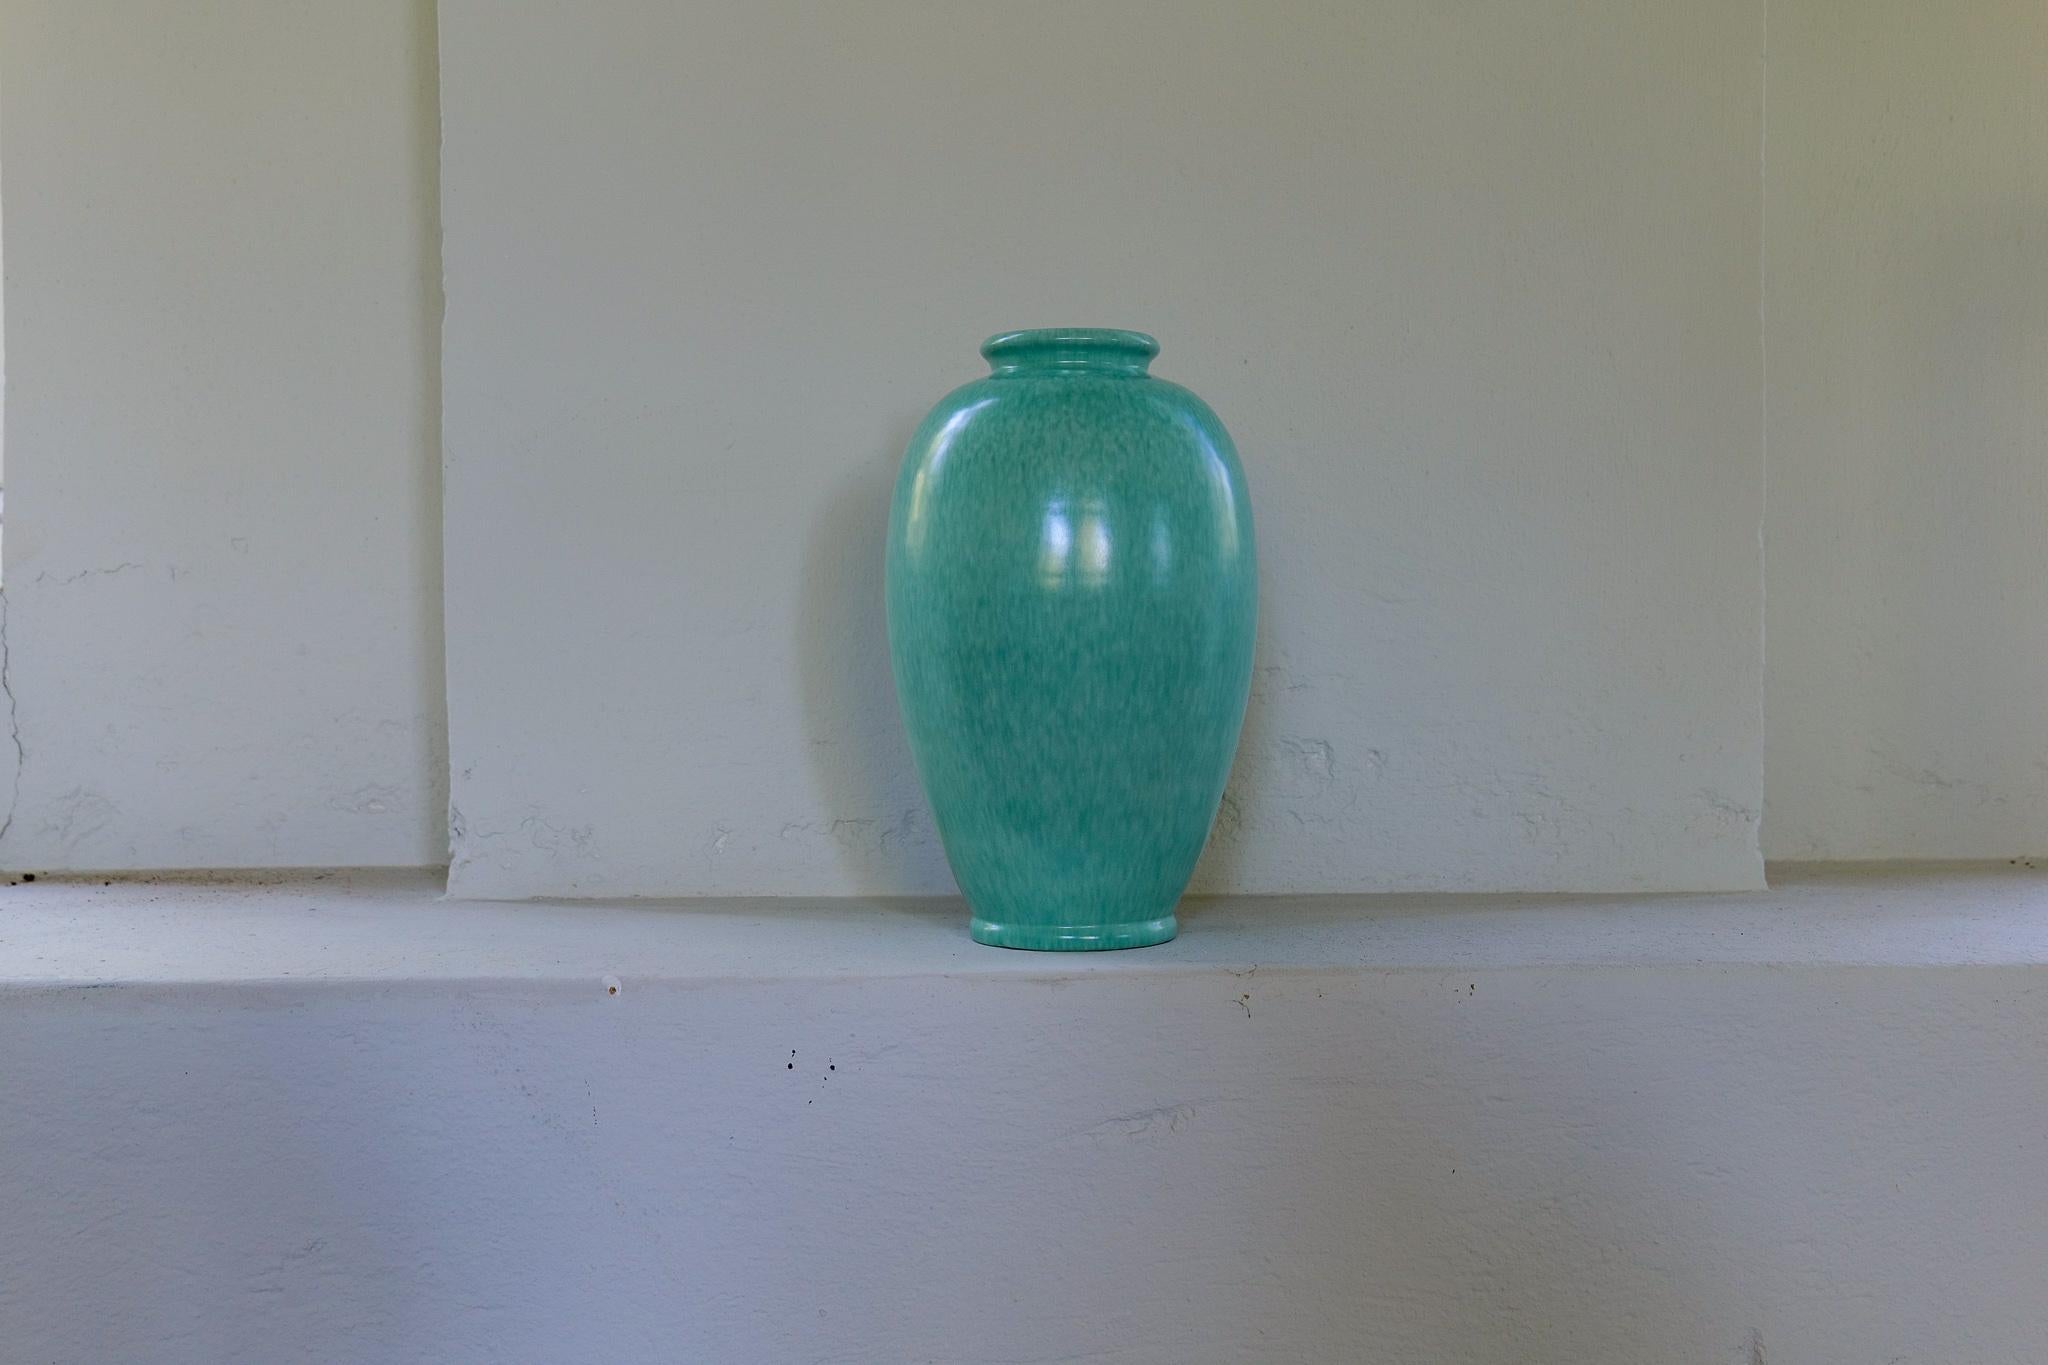 Ce merveilleux vase de sol sculpté a été créé / conçu par John Andersson pour Höganäs Keramik Suède années 1960.
La forme et la glaçure turquoise sont superbes. 

Bon état vintage. 

Dimensions : hauteur 40 cm ; diamètre de la partie centrale